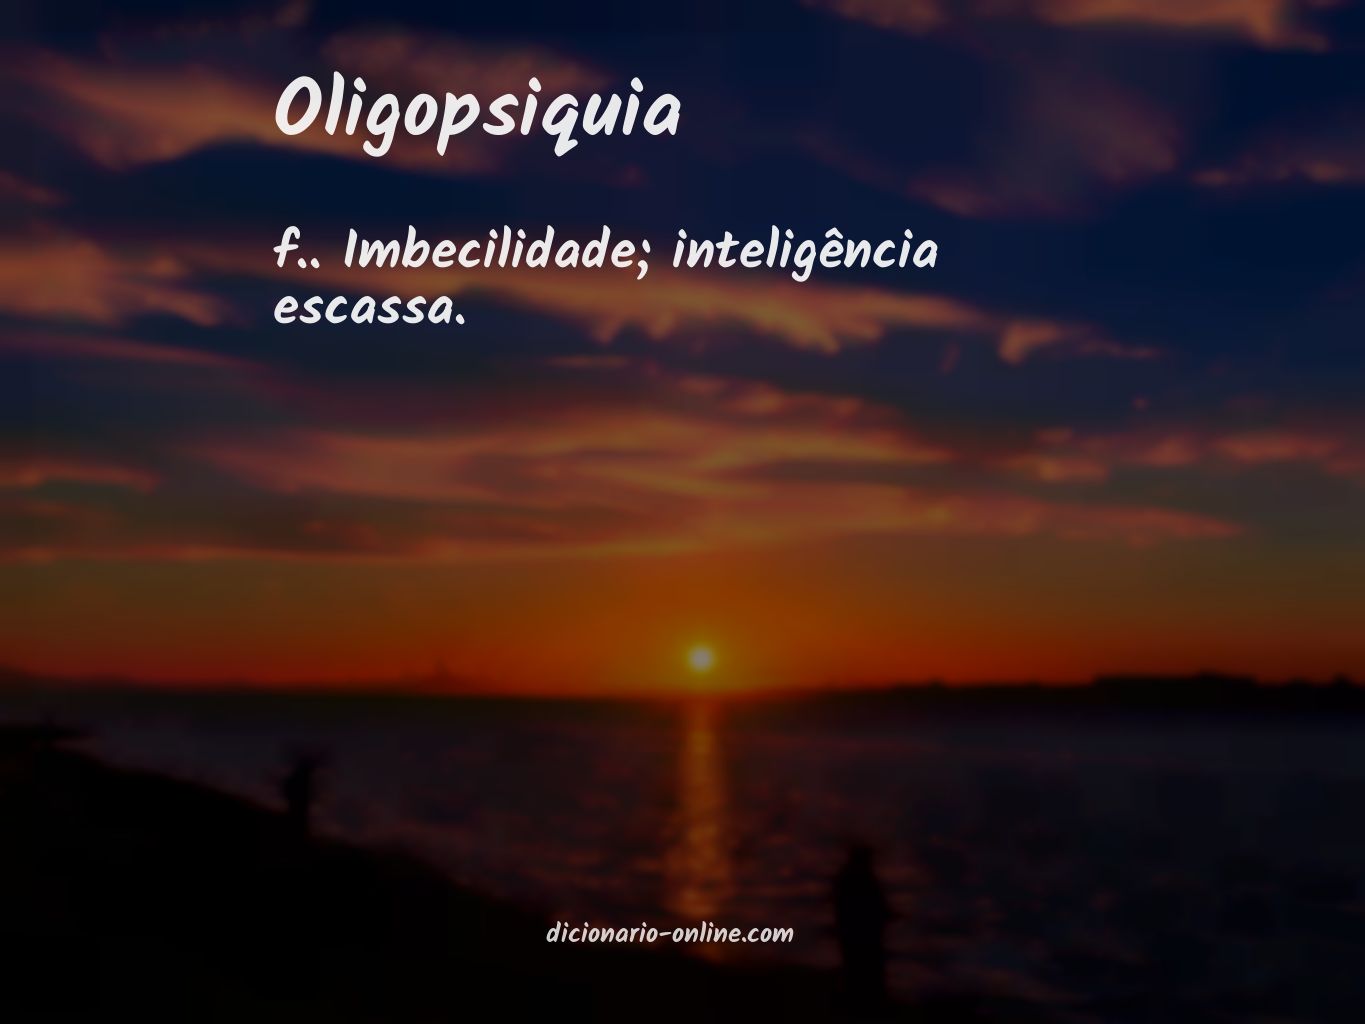 Significado de oligopsiquia